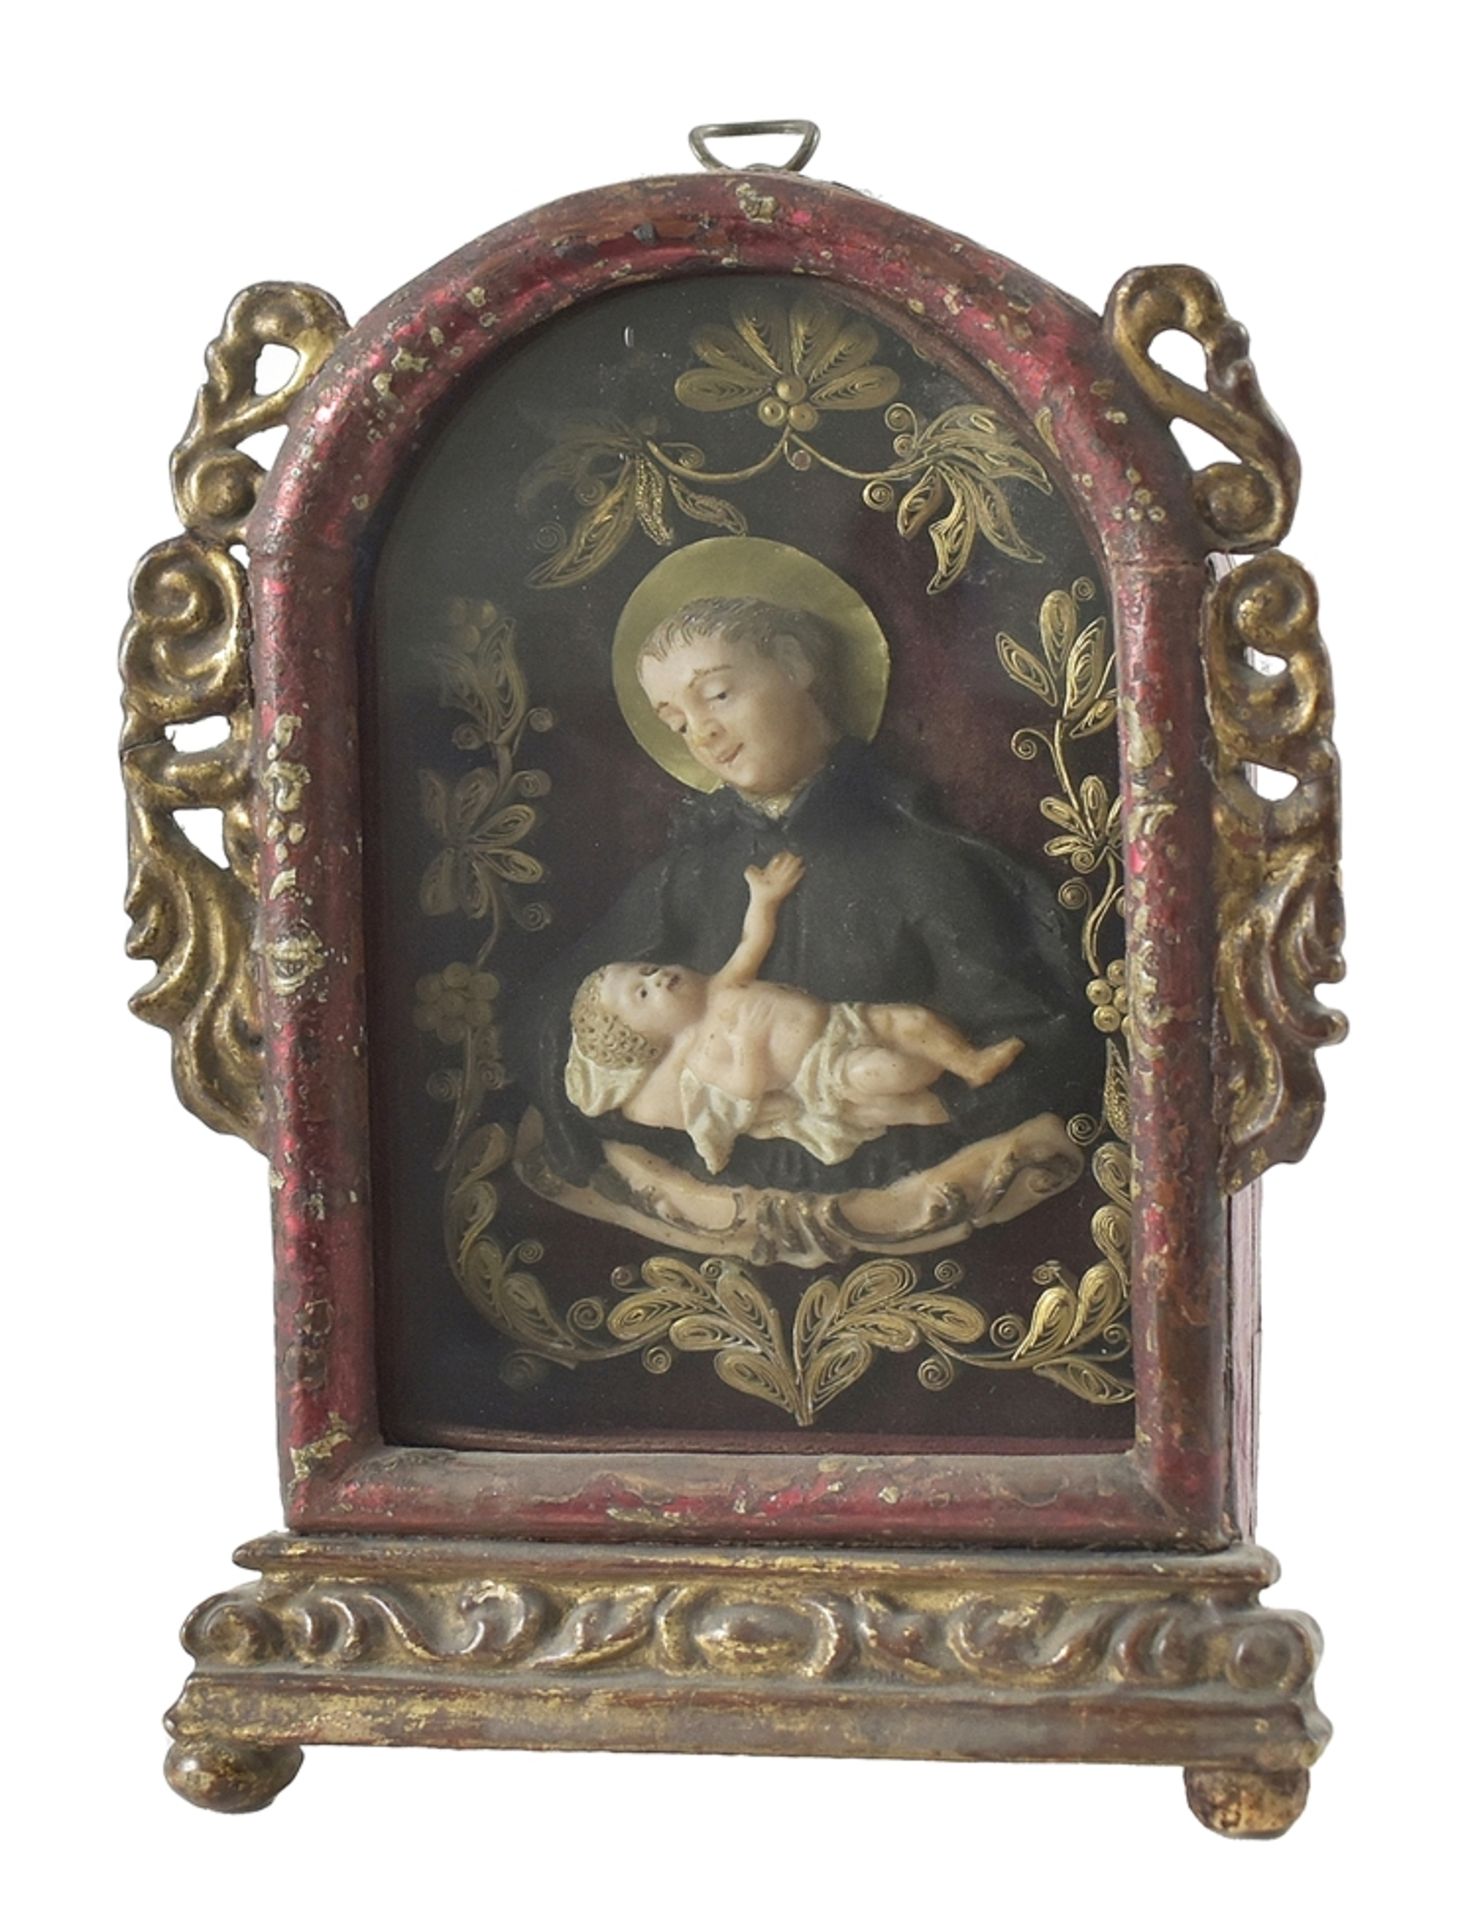 Hl. Franziskus mit Jesuskind. Wachsarbeit in verglastem Schrein. Anf. 19. Jh. H 24 cm Sammlung Bühl